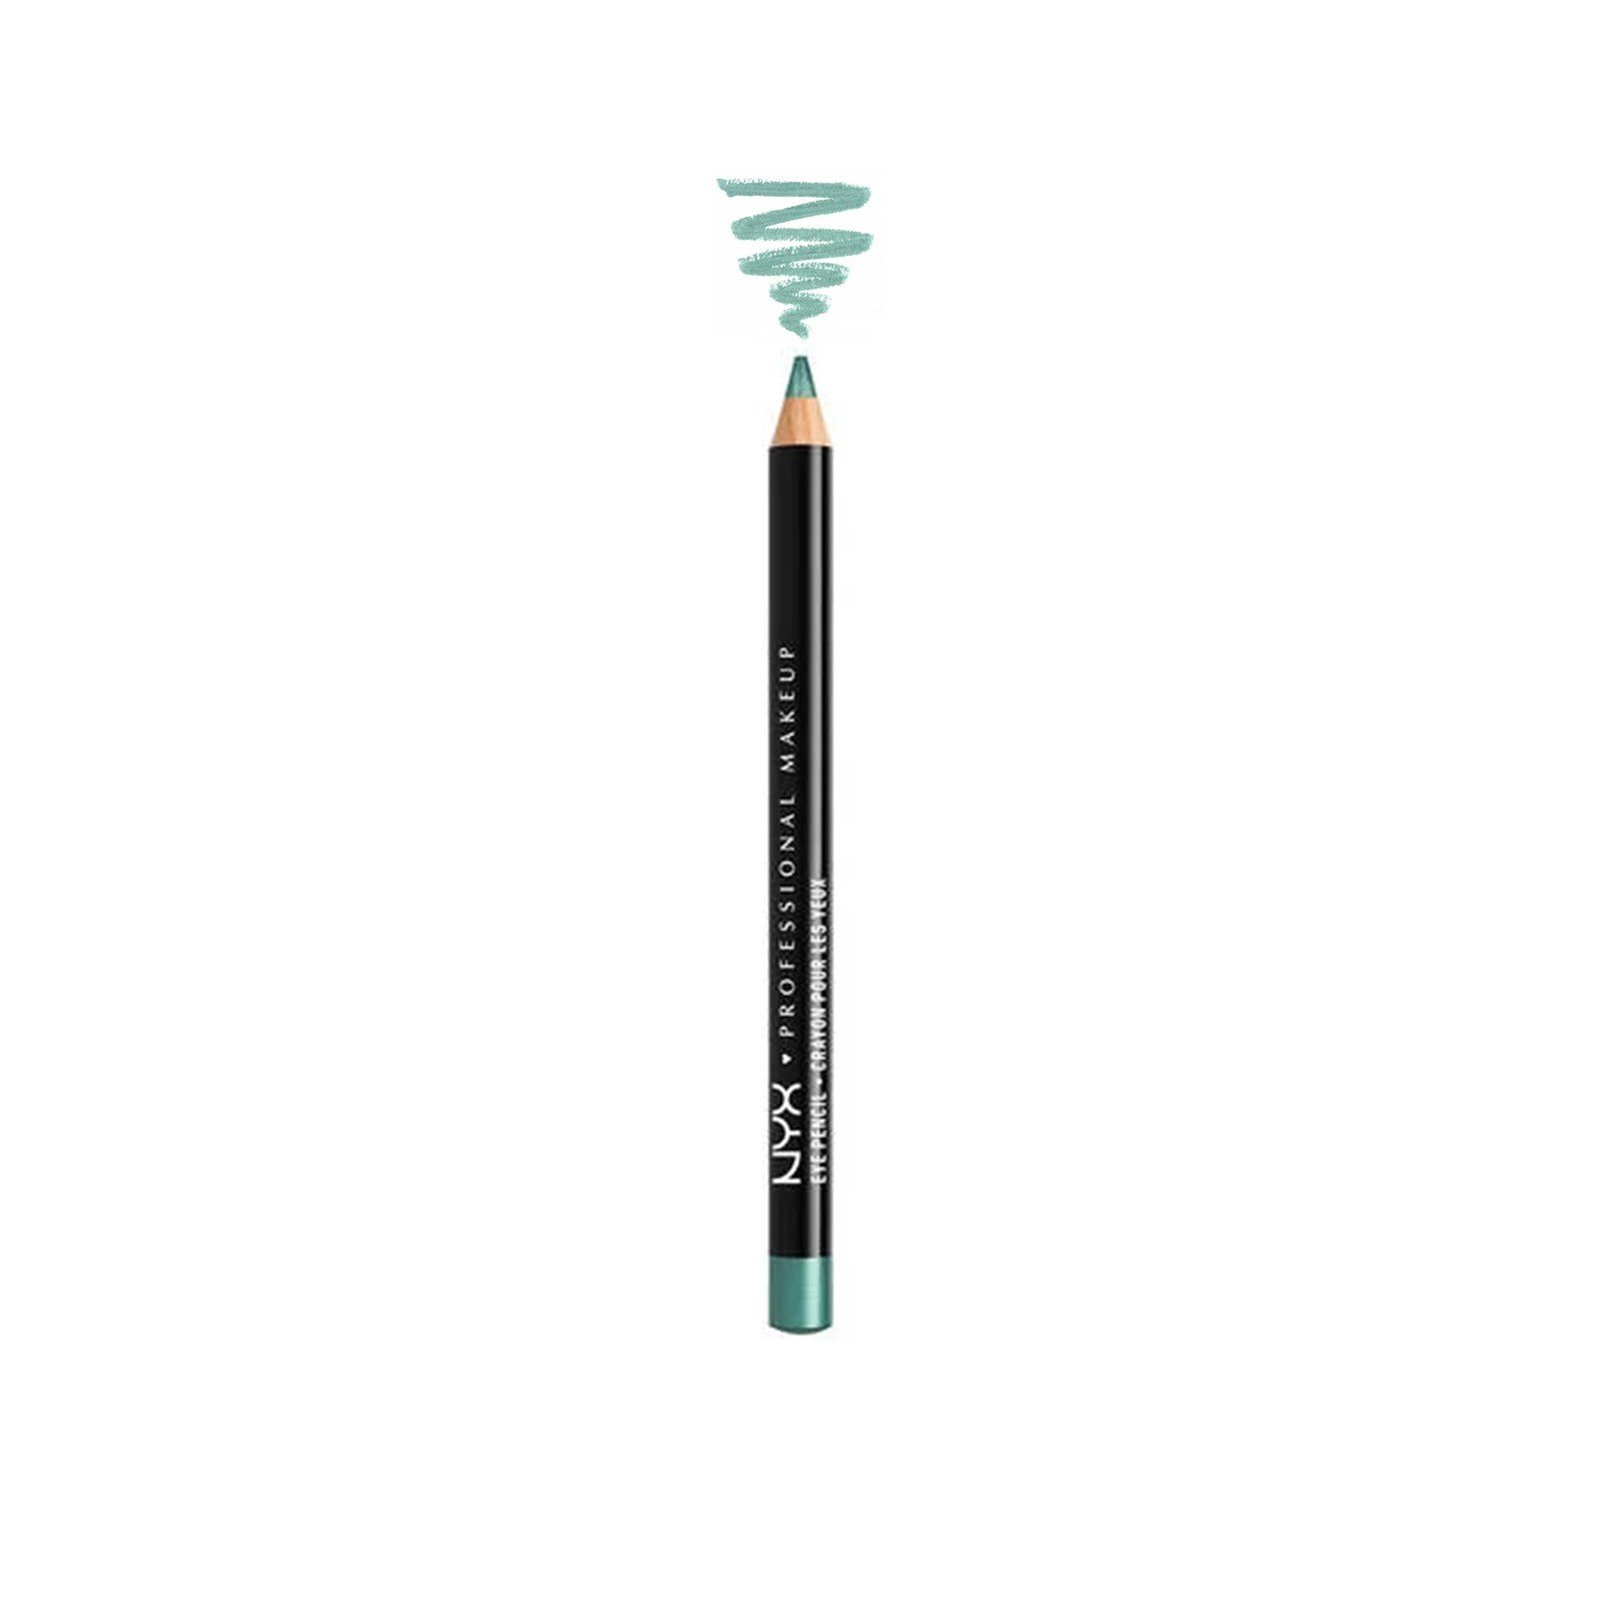 NYX Pro Makeup Slim Eye Pencil Seafoam Green 1.1g